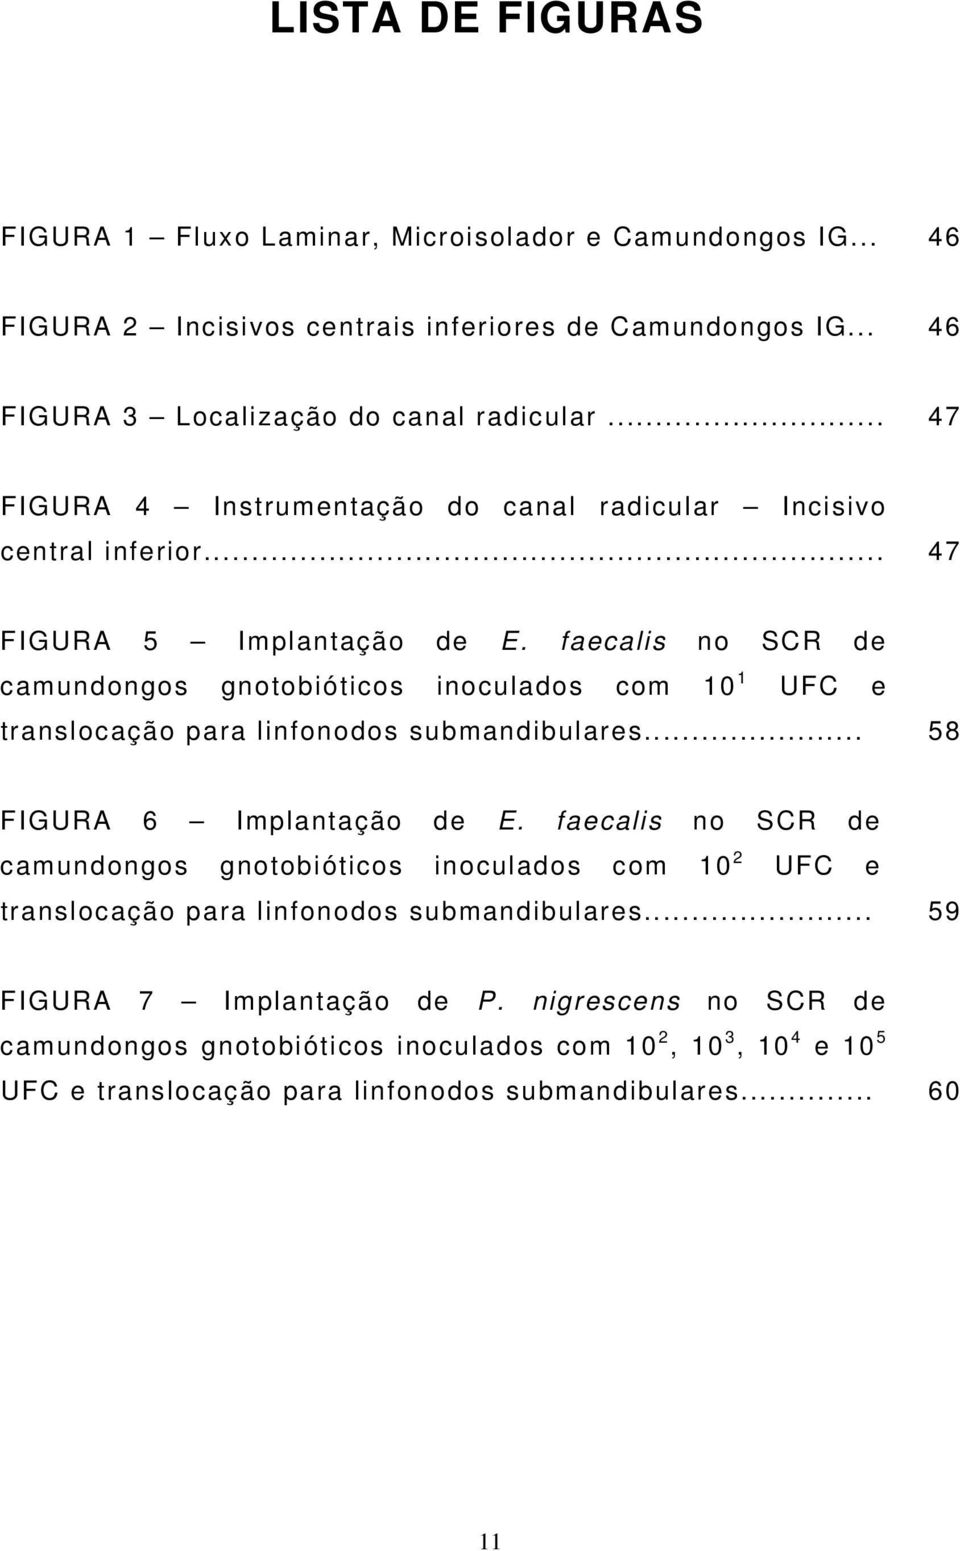 faecalis no SCR de camundongos gnotobióticos inoculados com 10 1 UFC e translocação para linfonodos submandibulares... 58 FIGURA 6 Implantação de E.